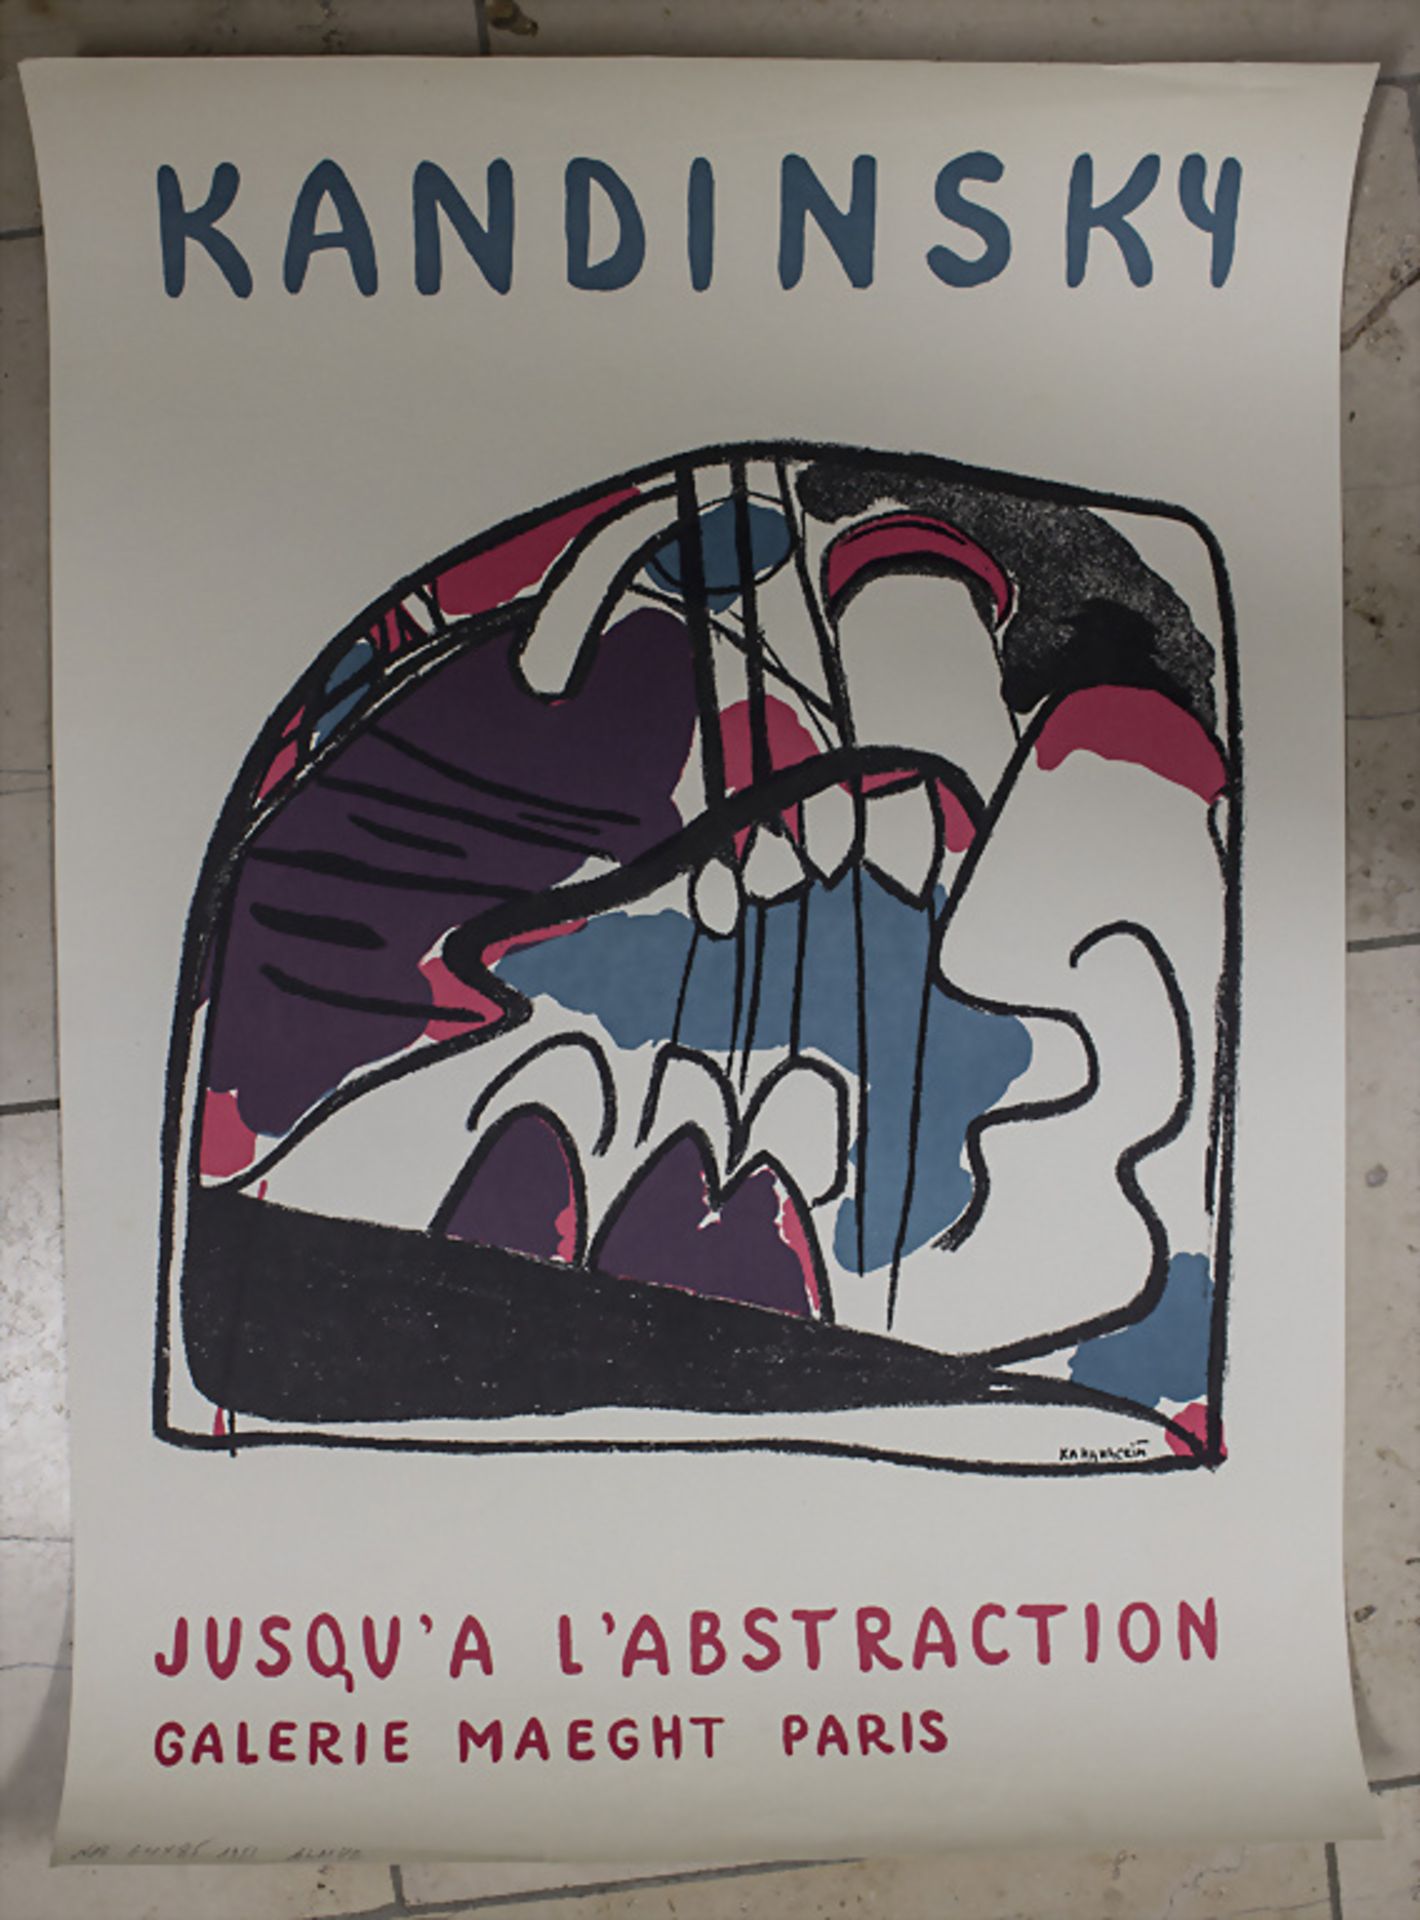 Wassily Kandinsky (1866-1944), Ausstellungsplakat Galerie Maeght / An exhibition poster, 1951